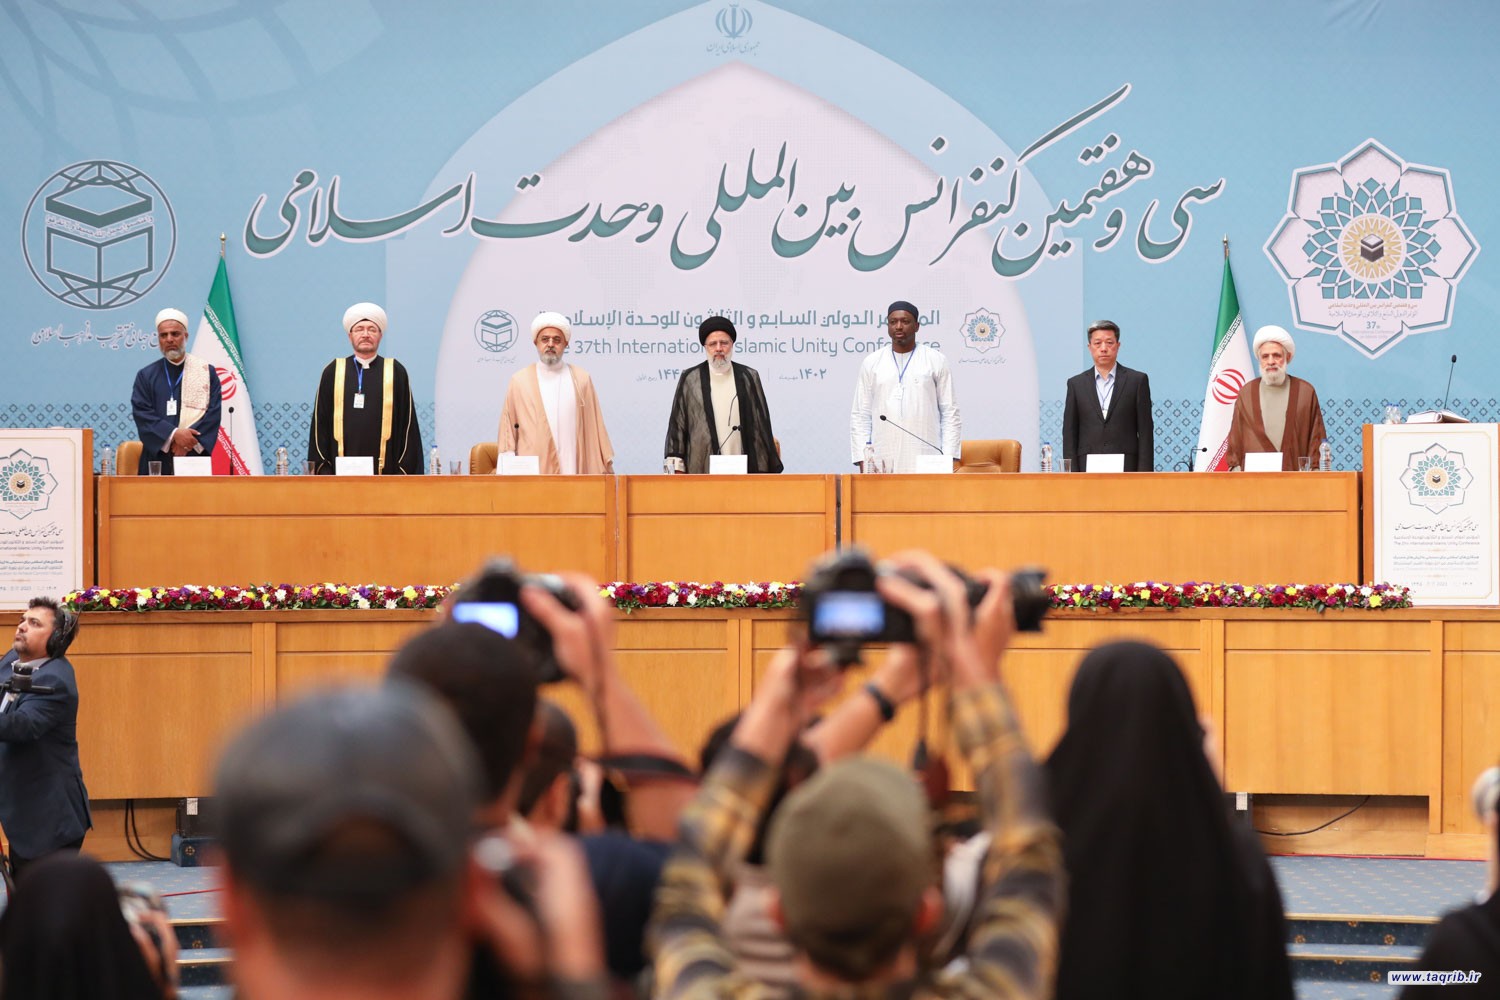 انطلاق المؤتمر الدولي الـ 37 للوحدة الاسلامية برعاية الرئيس الايراني في طهران